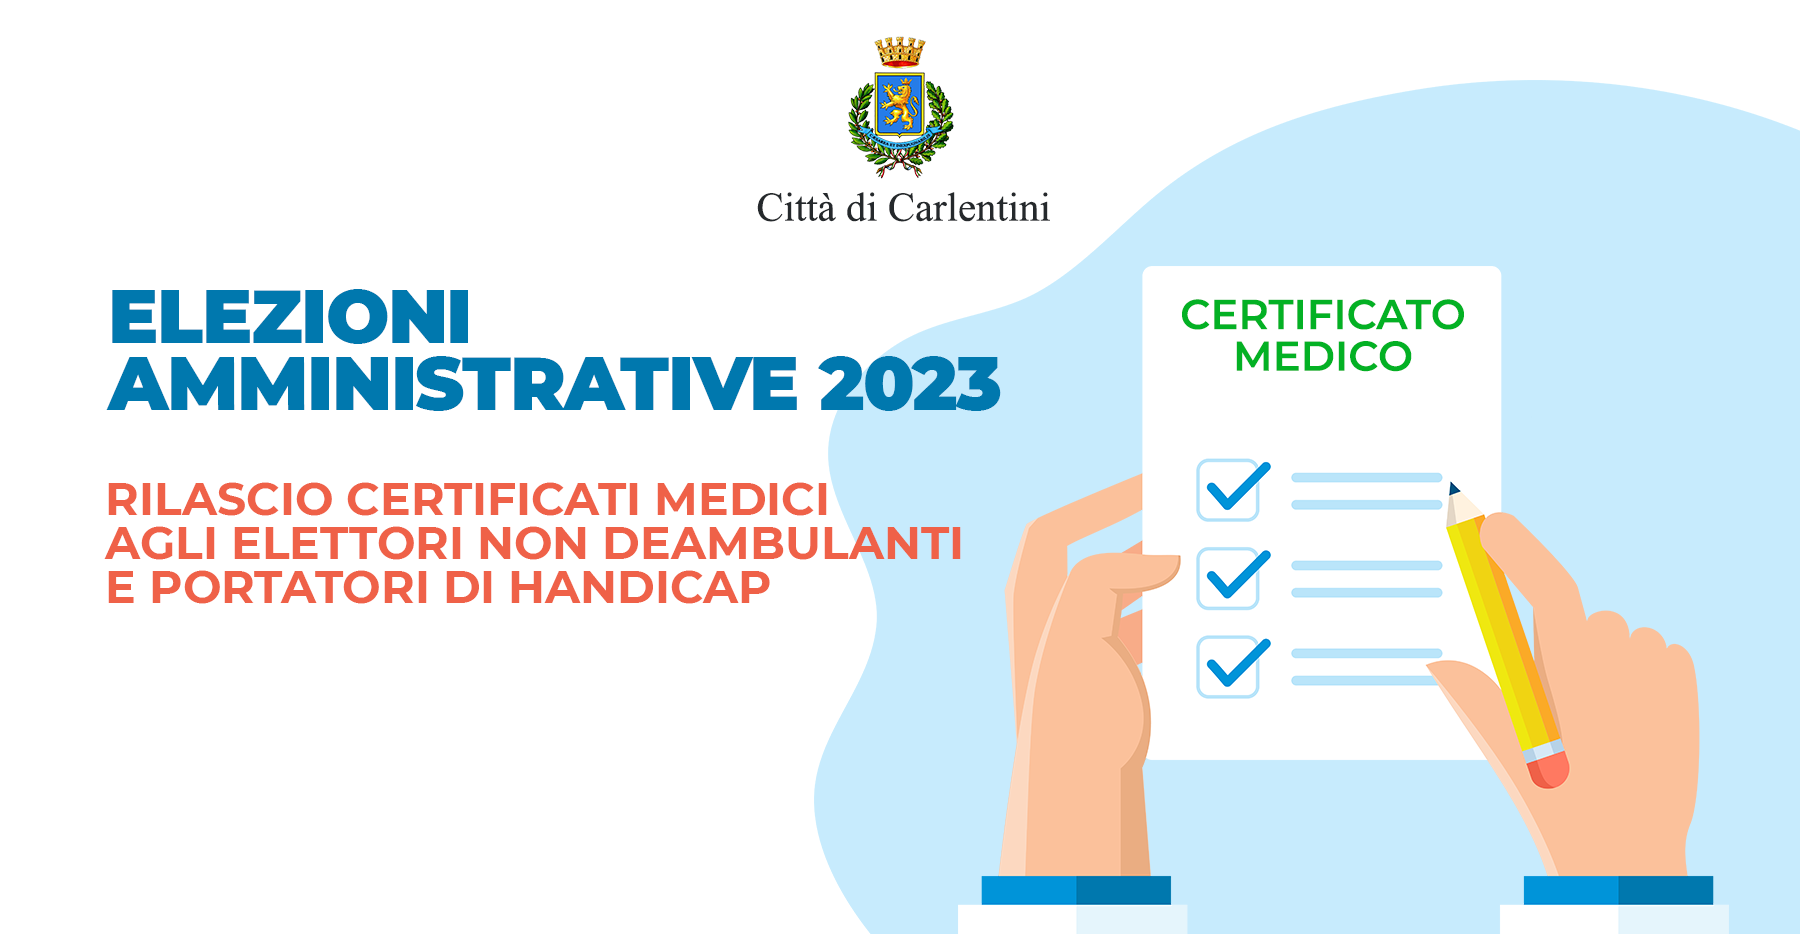 Elezioni Amministrative 2023: rilascio certificati medici a elettori non deambulanti e portatori di handicap